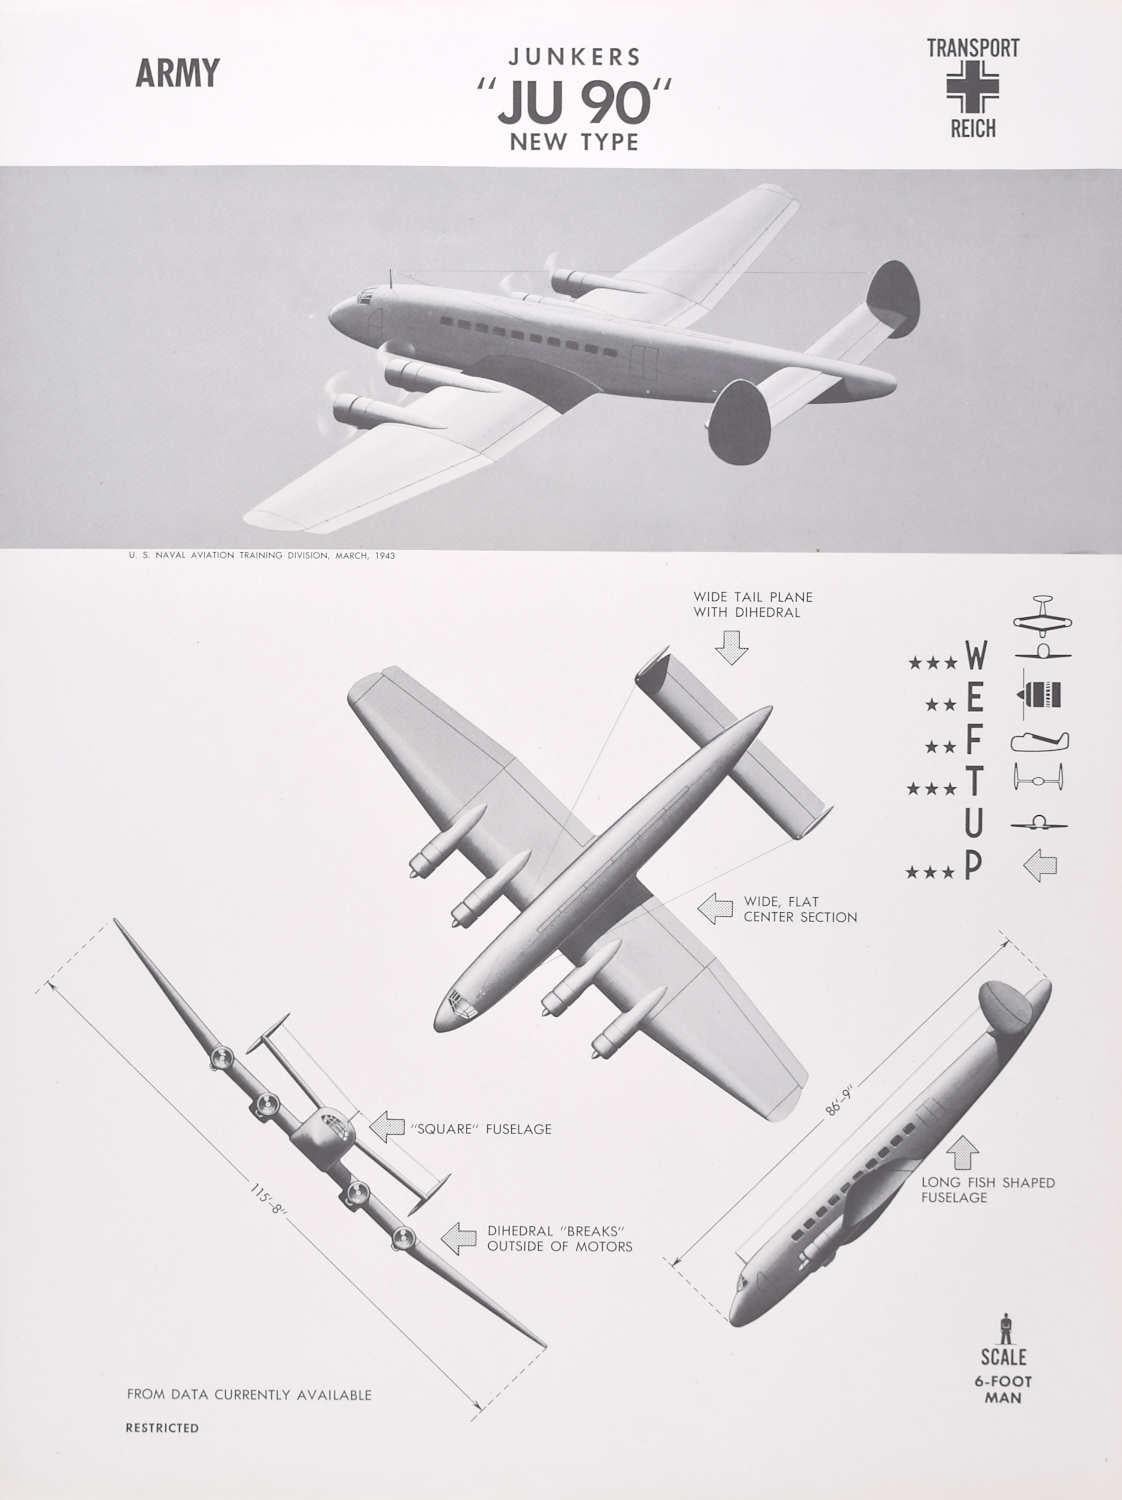 Affiche d'identification d'avions de transport allemands de type nouveau de 1943 Junkers « JU 90 », seconde guerre mondiale - Print de Unknown